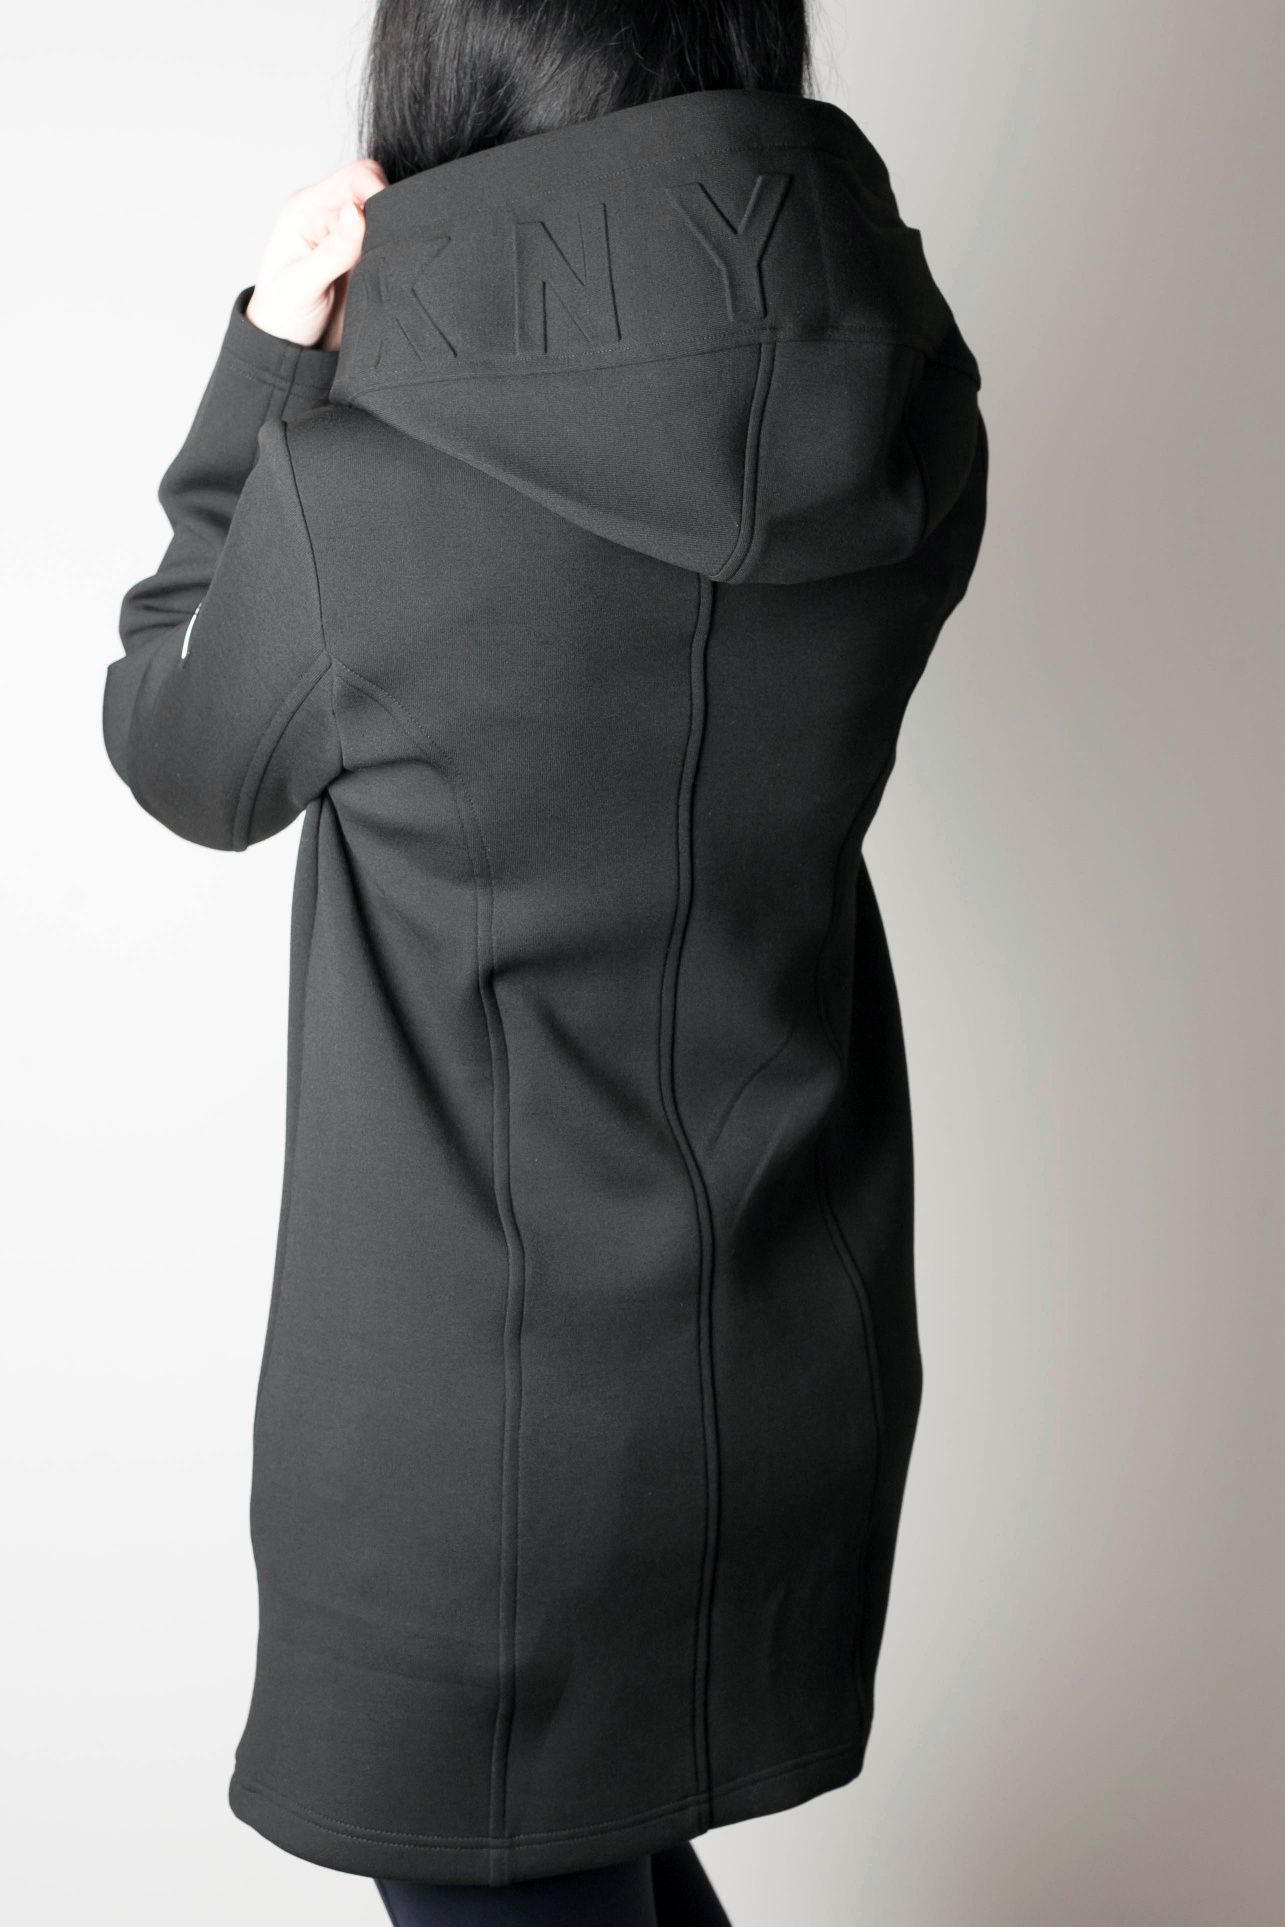 DKNY оригинал. Куртка тренч плащ осень женская чёрная размер XS XL